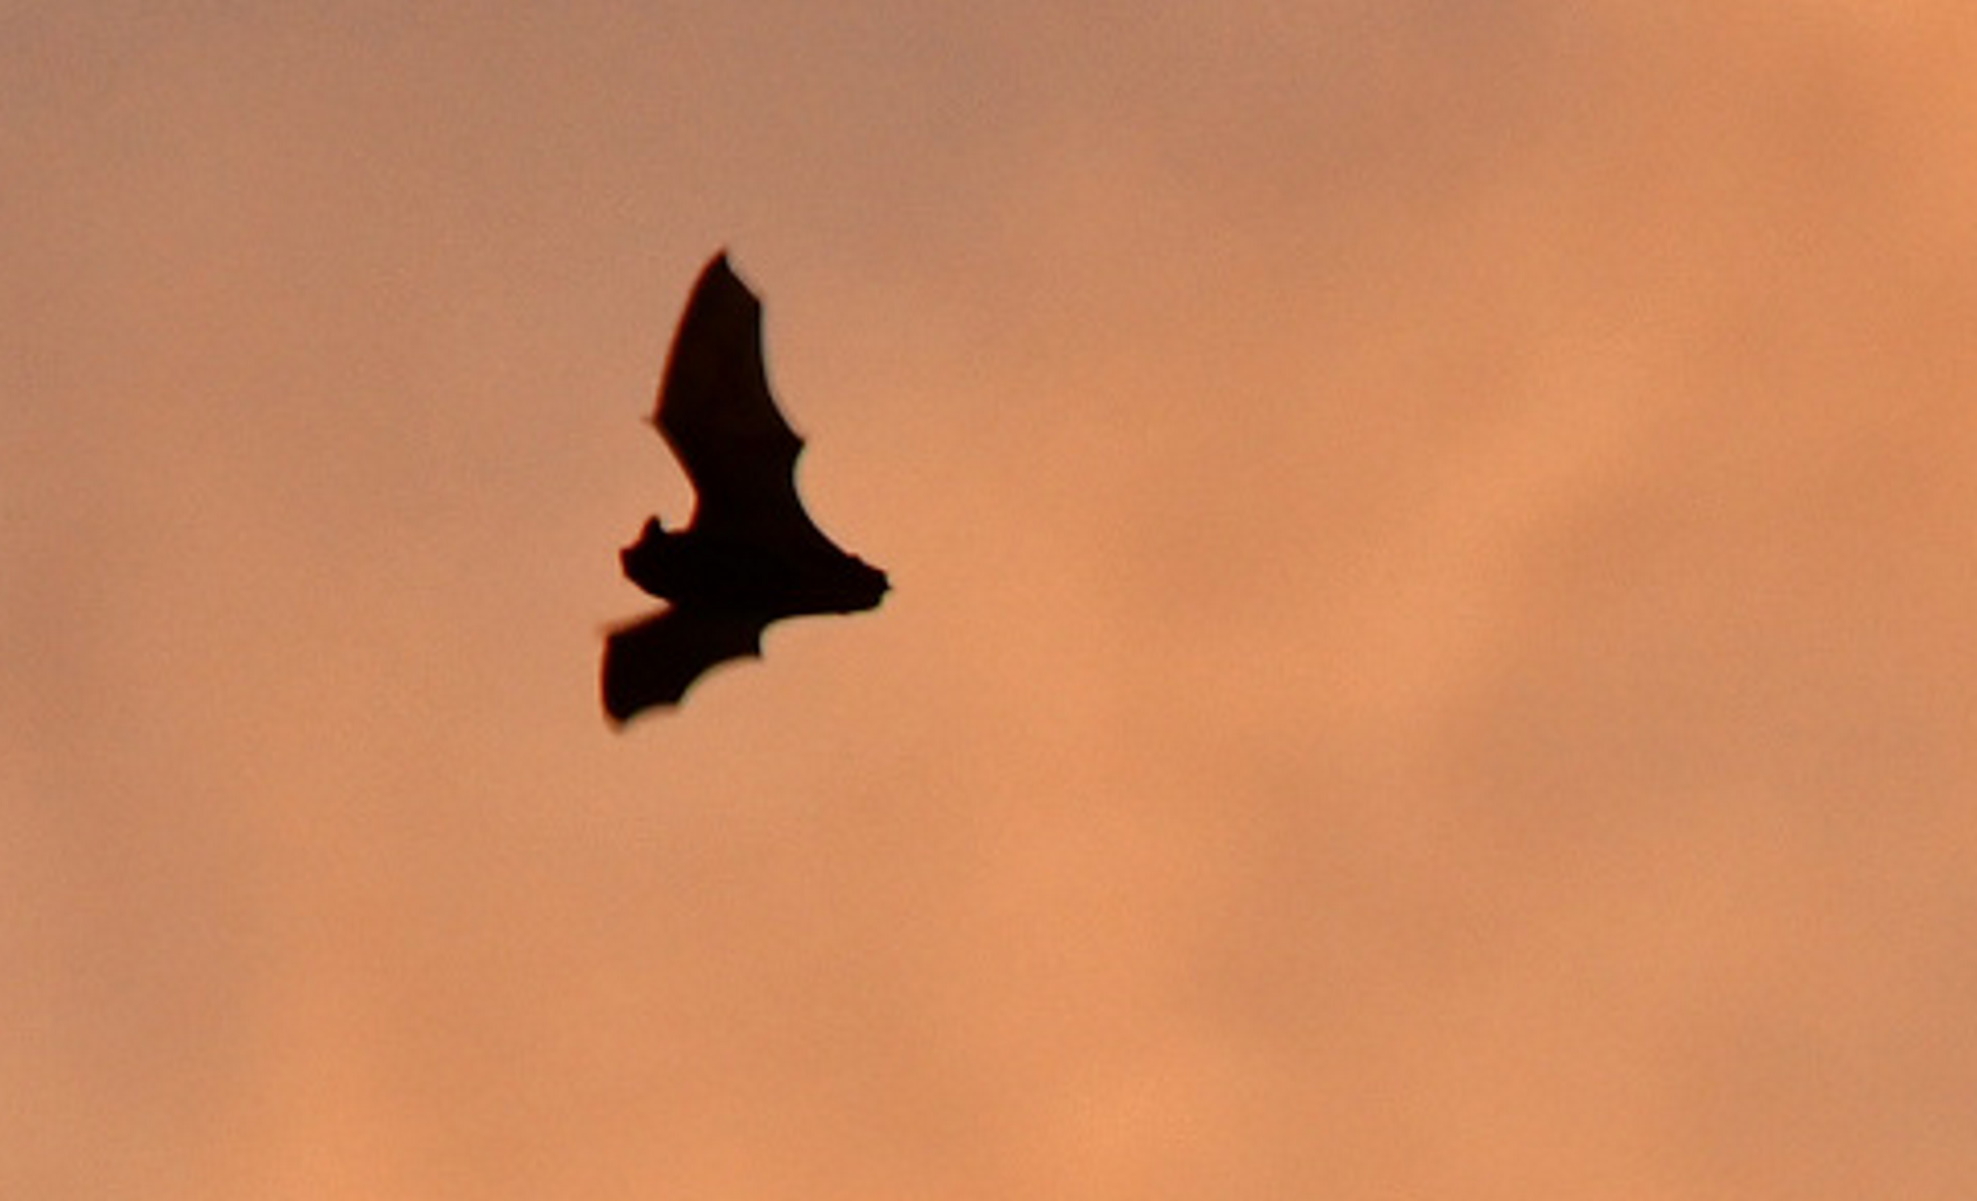 Νέος κορονοϊός απειλεί να μολύνει τον άνθρωπο - Ο ιός βρέθηκε σε νυχτερίδες στη Βρετανία